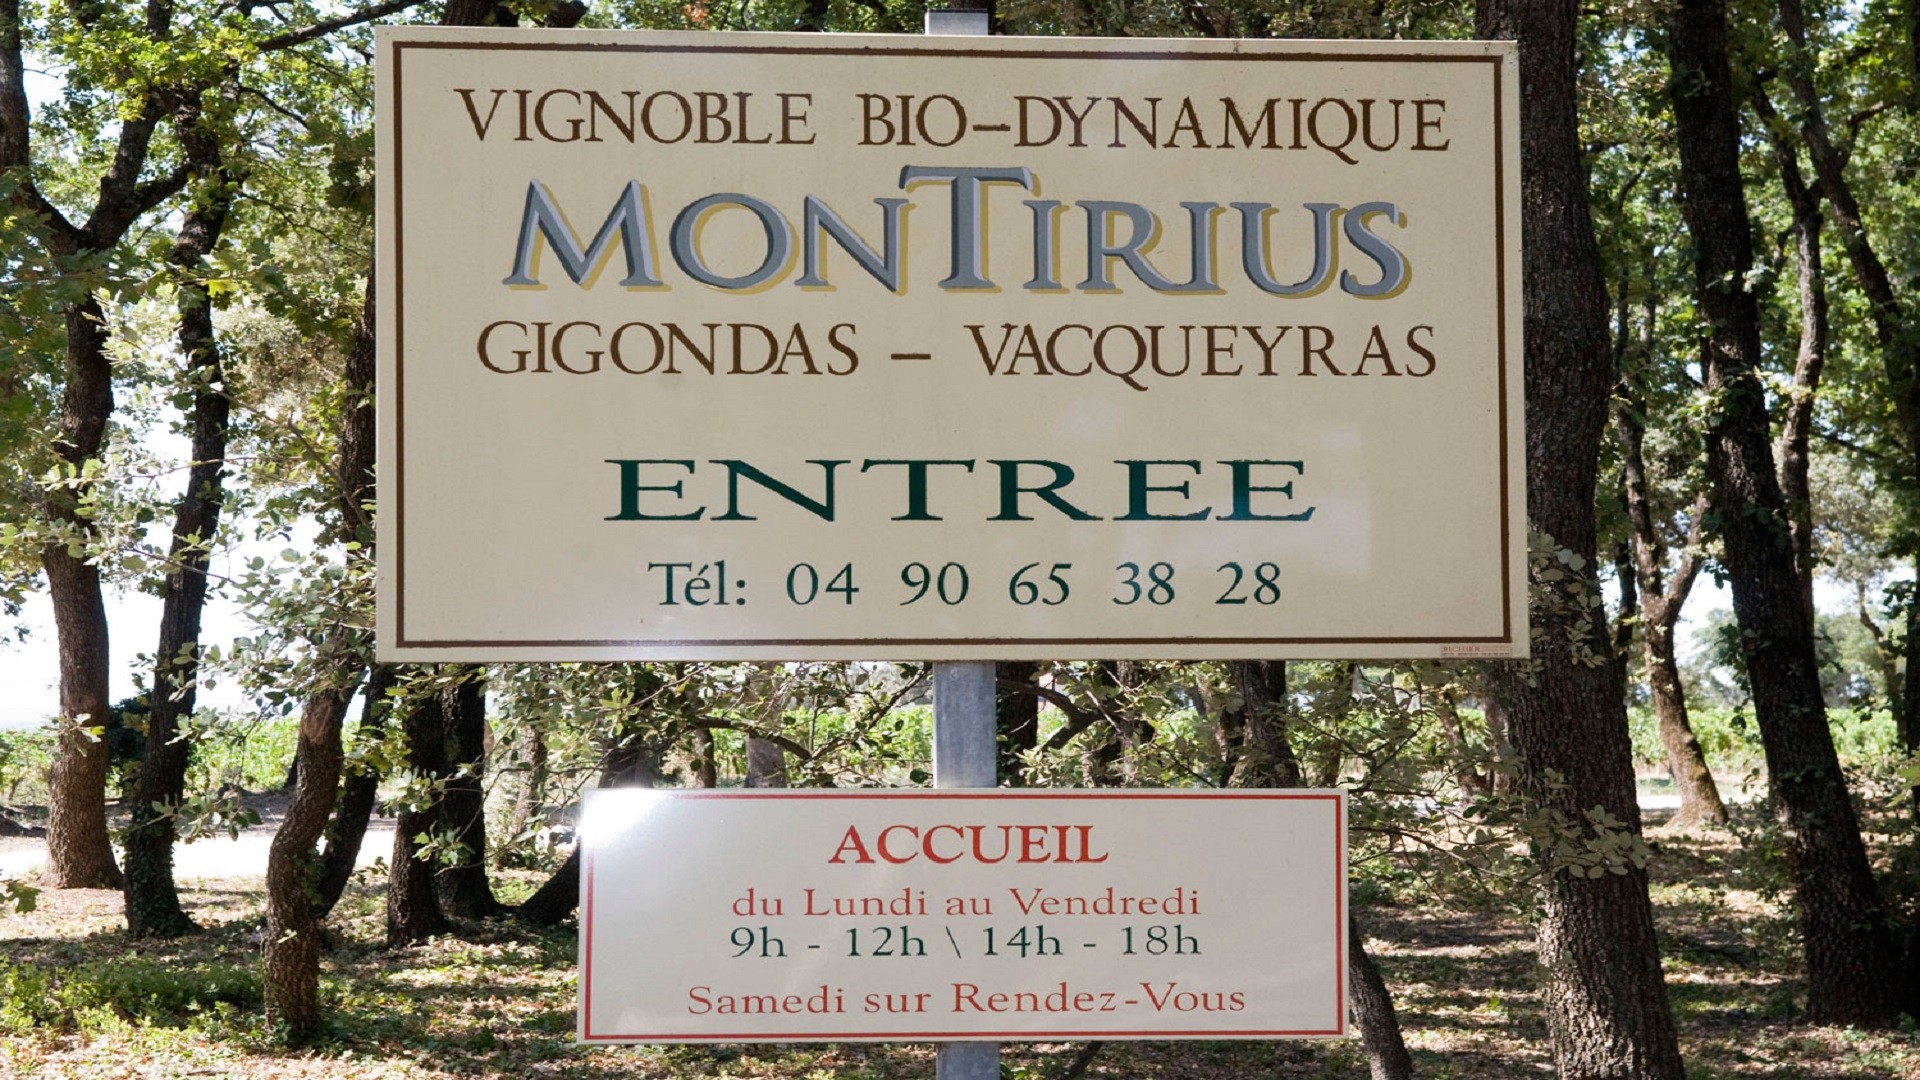 montirius-vignoble-bio-dynamique-provence-gigondas-seminaires-de-caractere